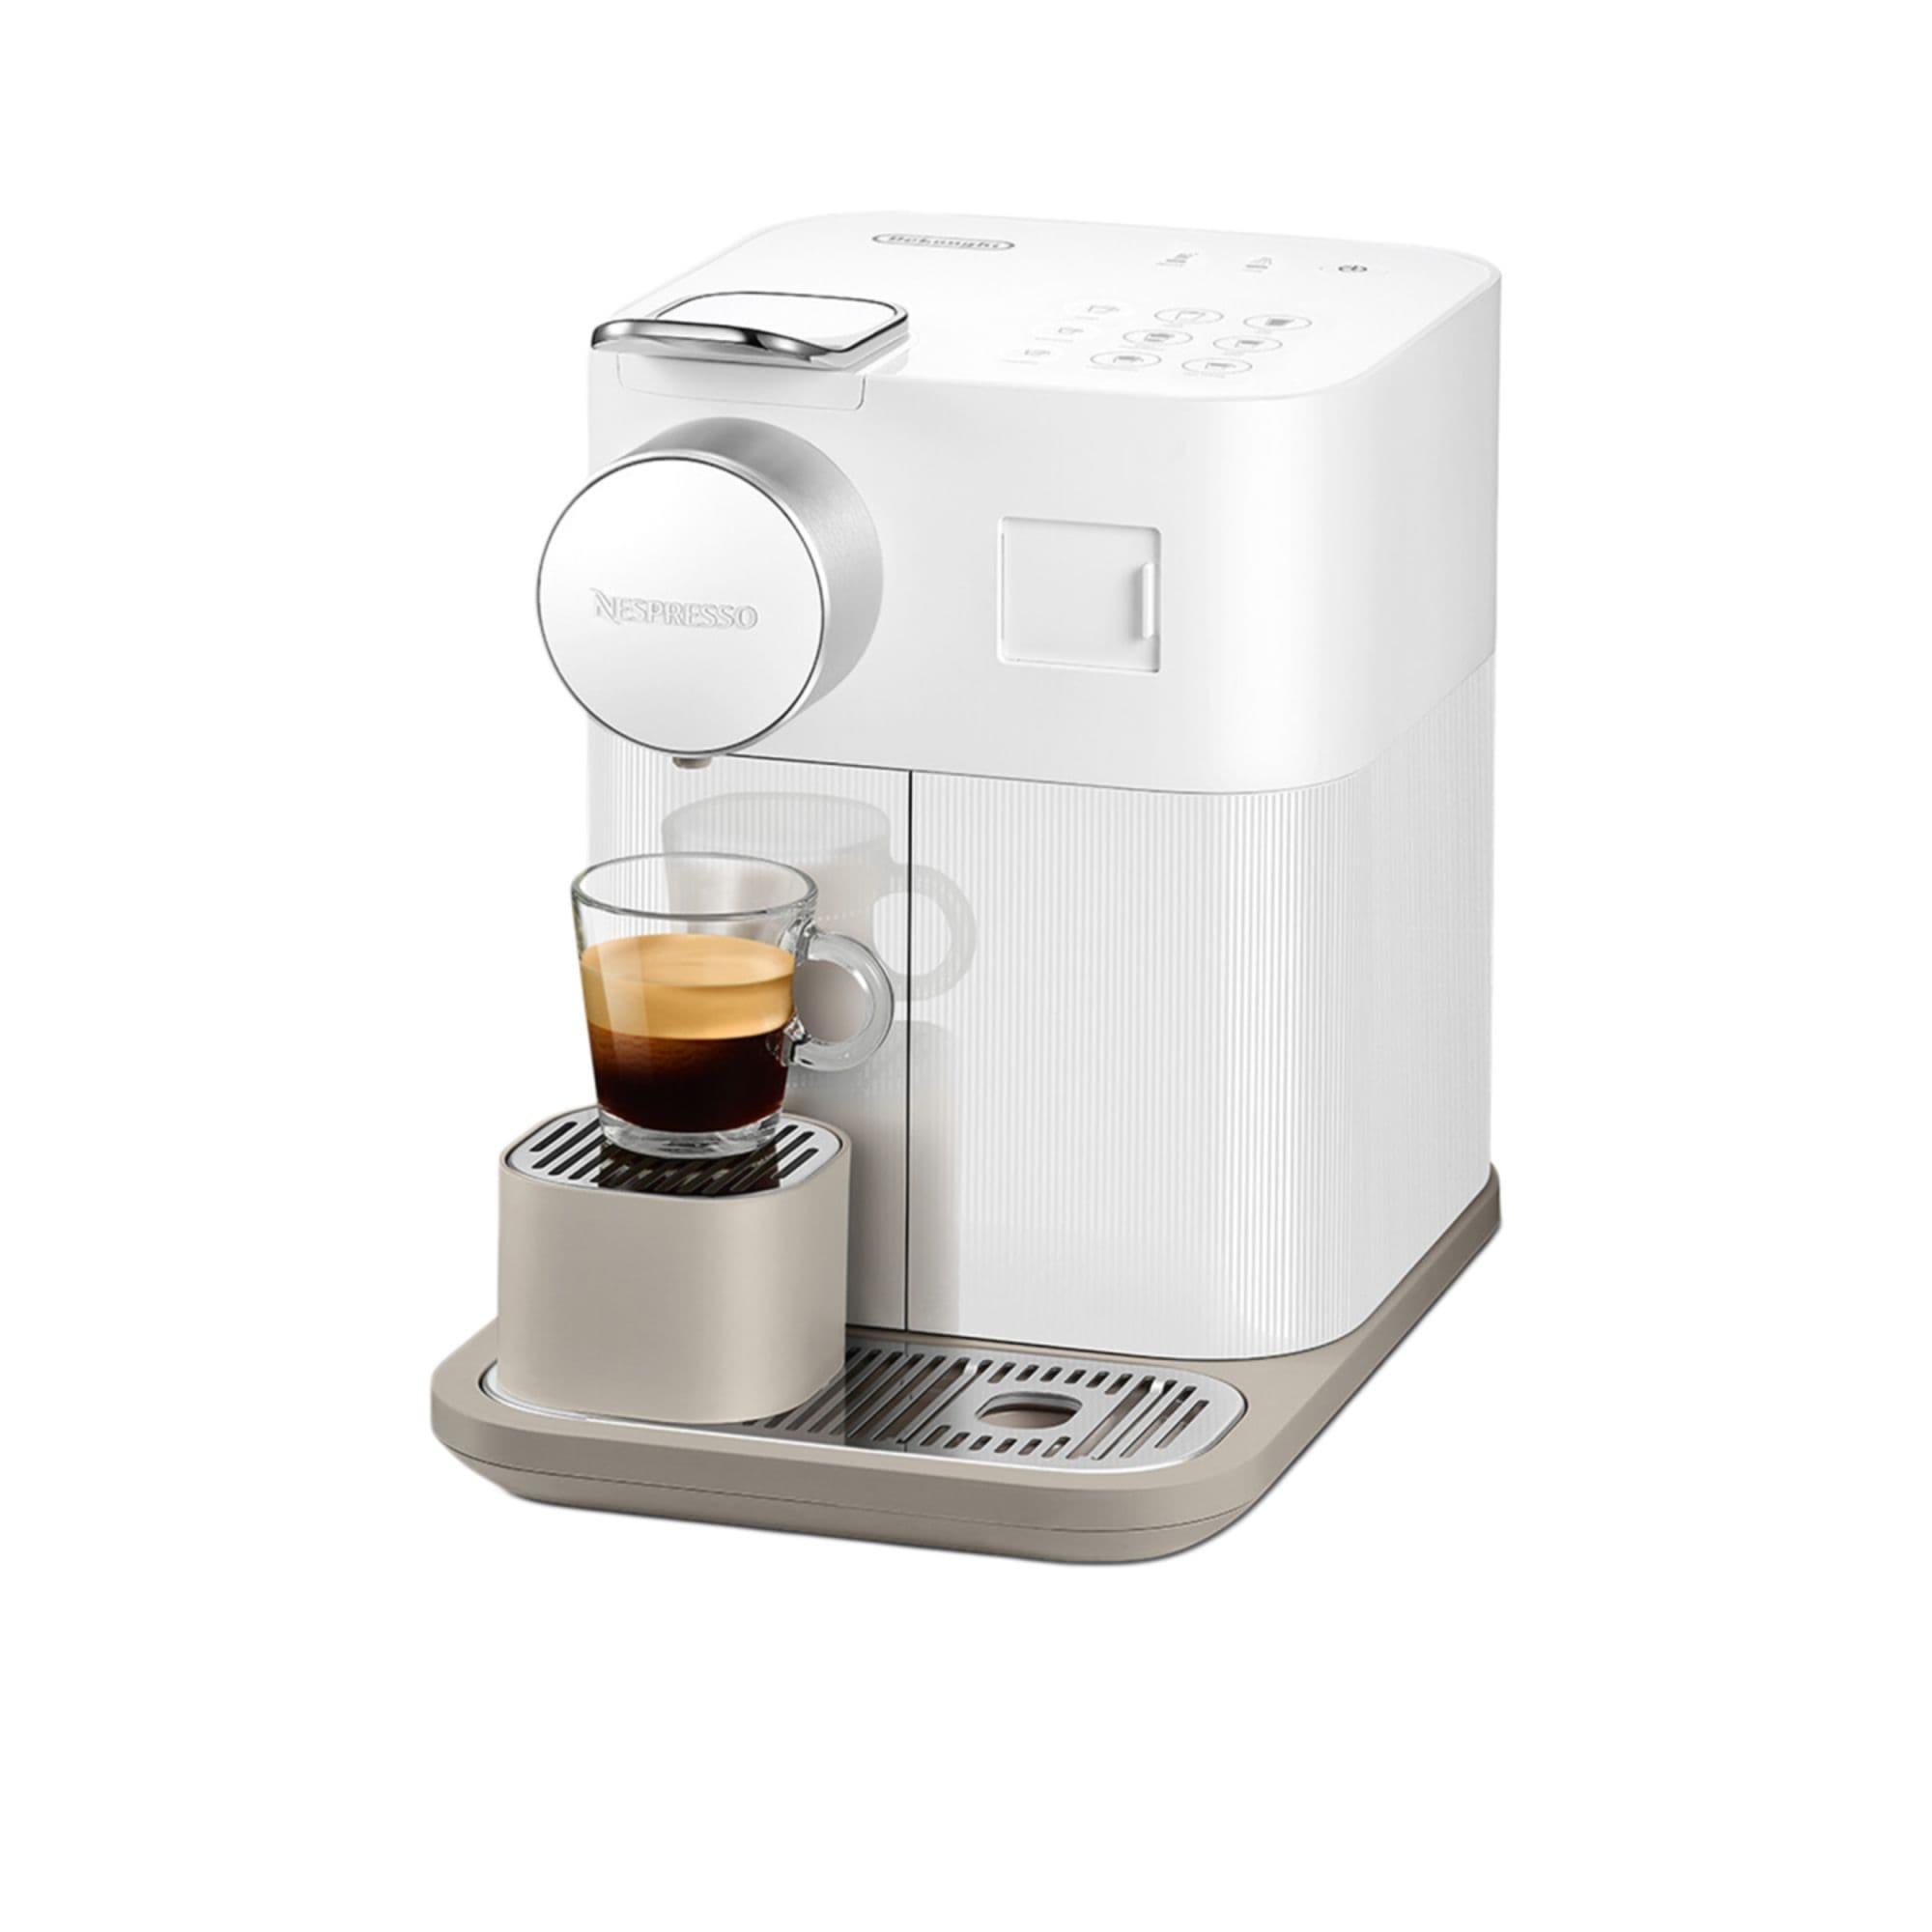 DeLonghi Nespresso Gran Lattisima EN640W Automatic Capsule Coffee Machine White Image 1